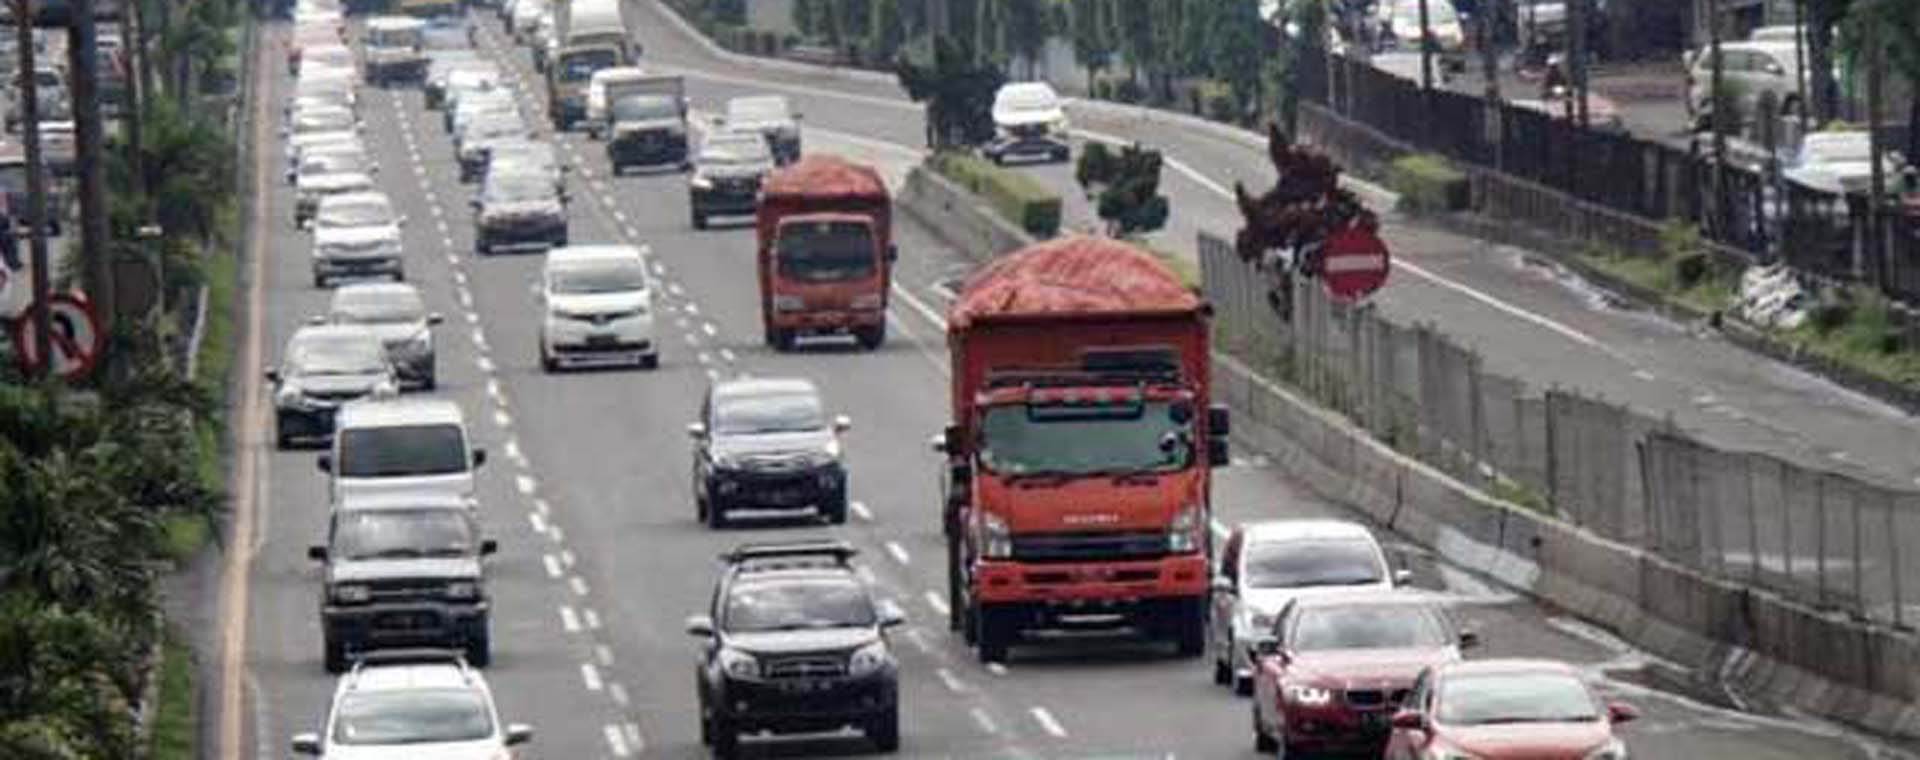 Truk sarat muatan melintas di jalan Tol Lingkar Luar, Jakarta. Bisnis - Himawan L Nugraha